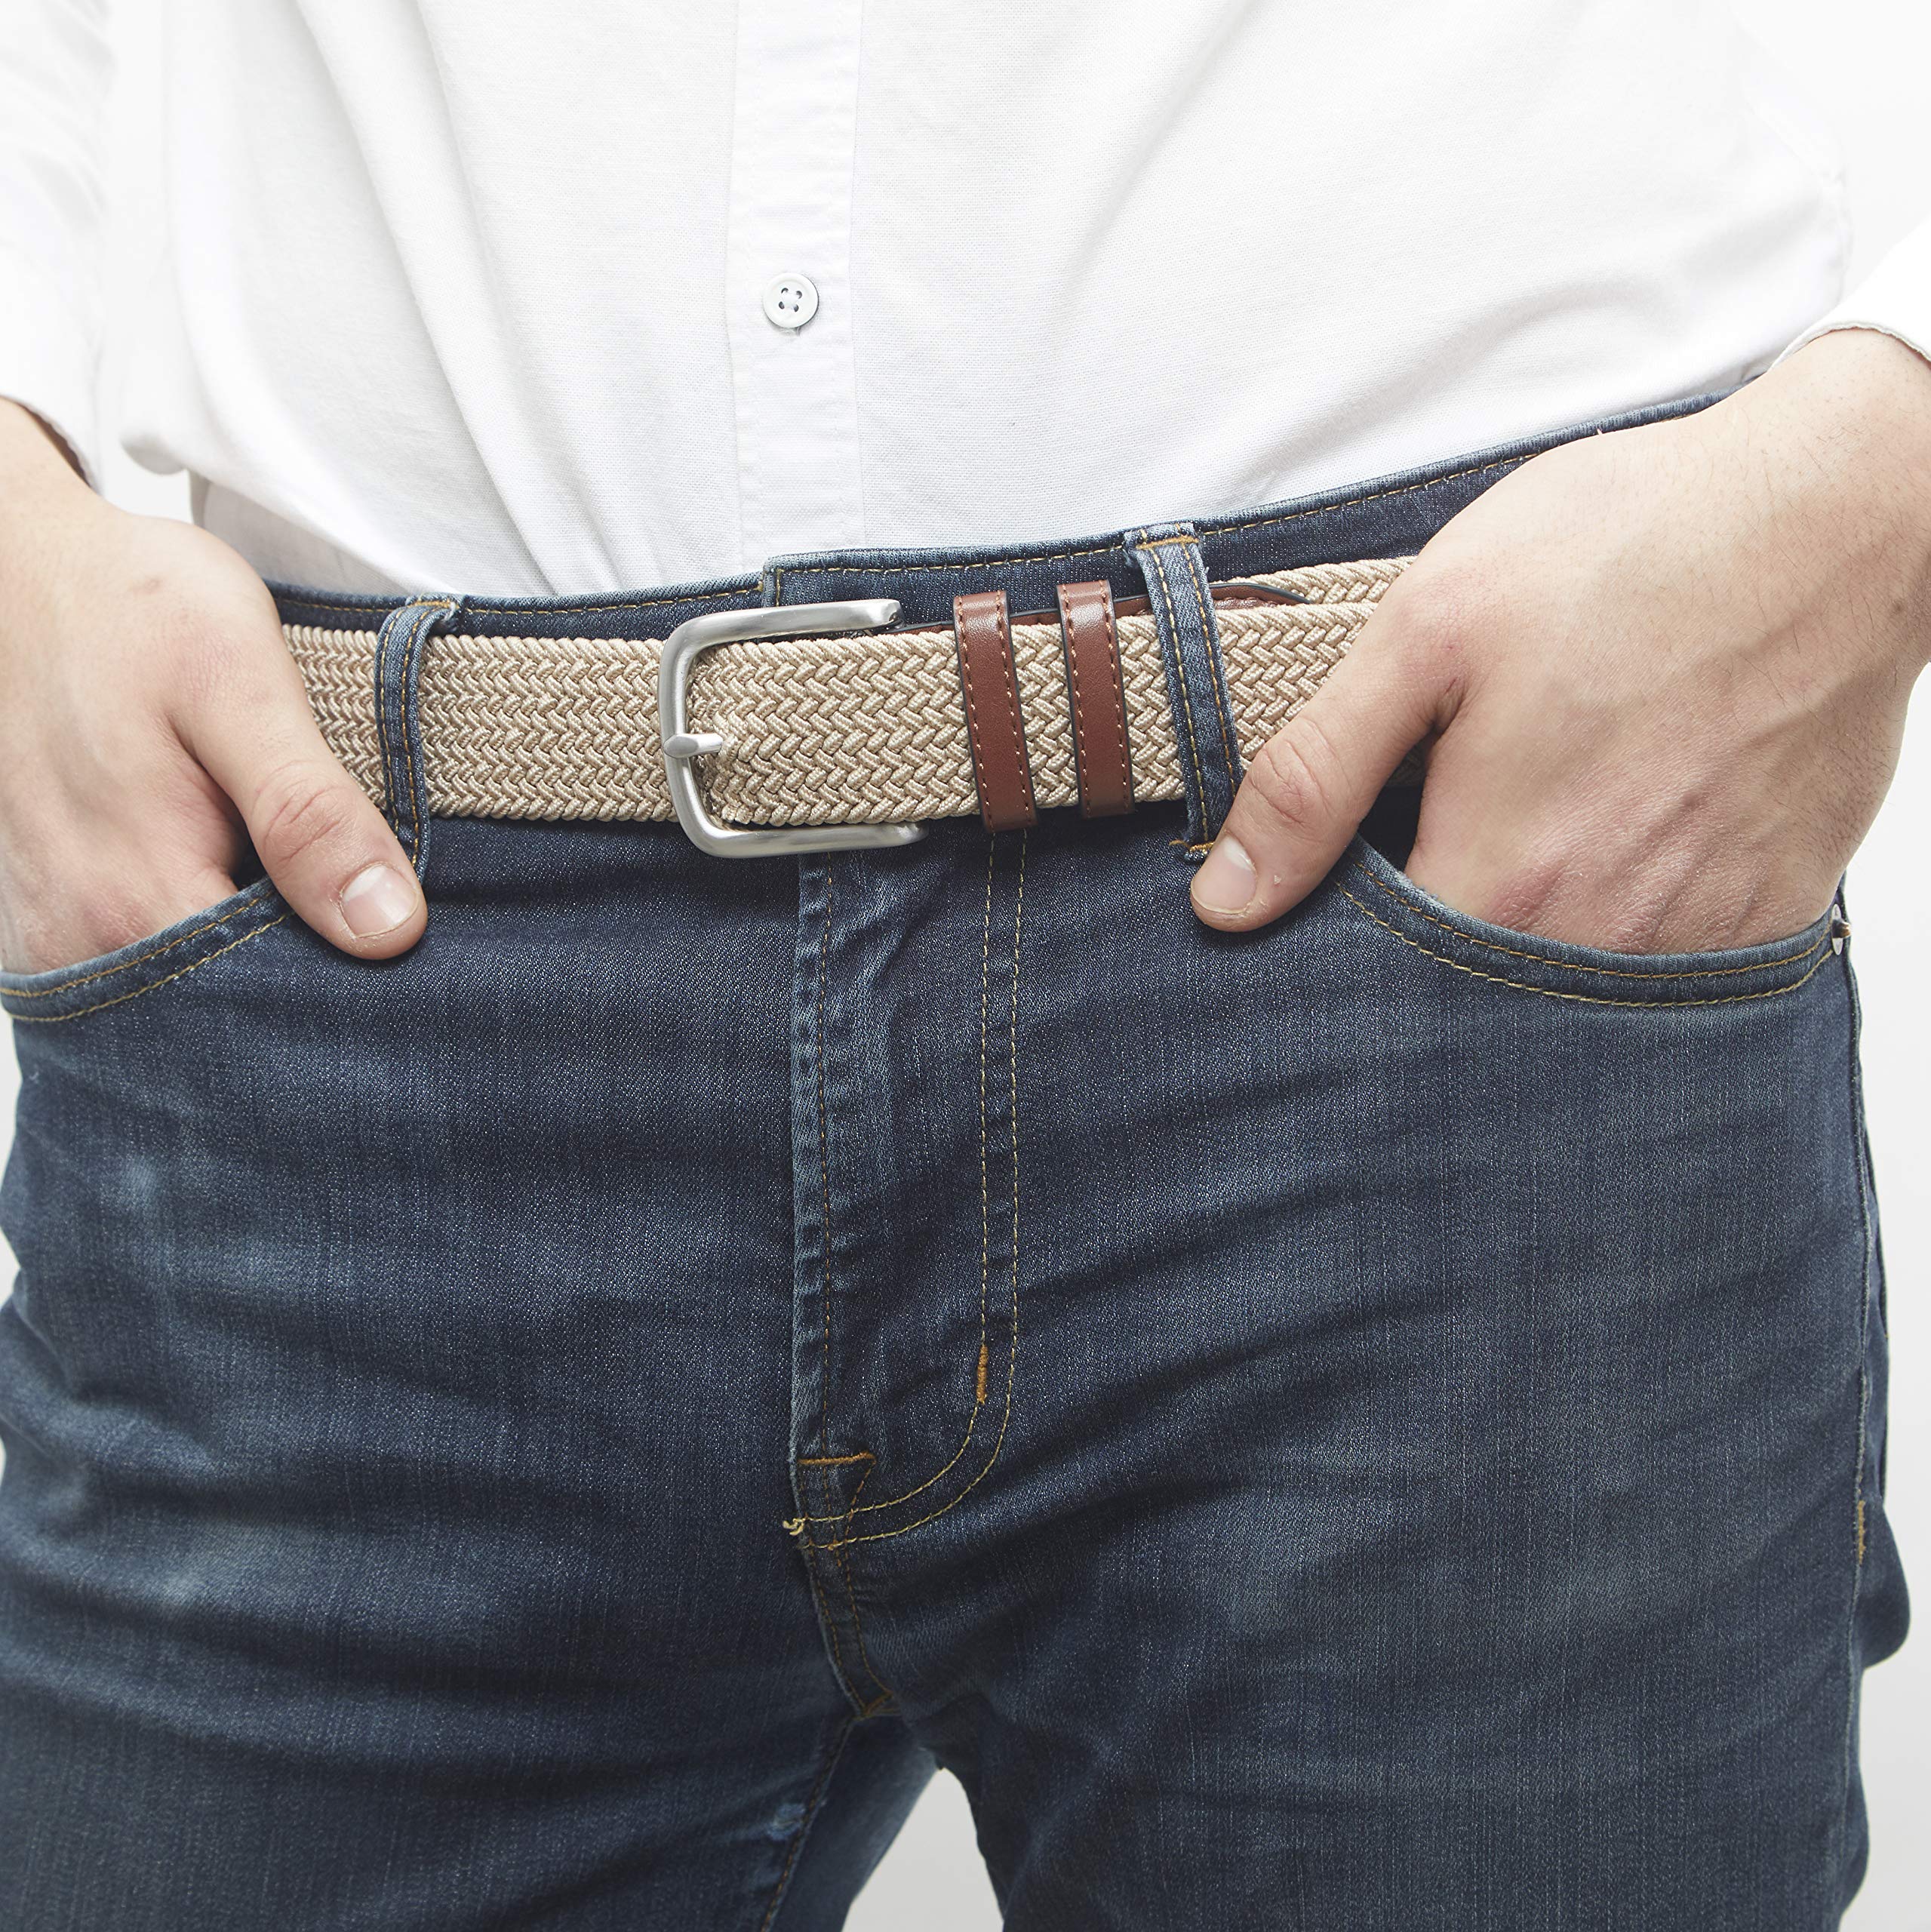 Amazon Essentials Men's Stretch Woven Braid Belt